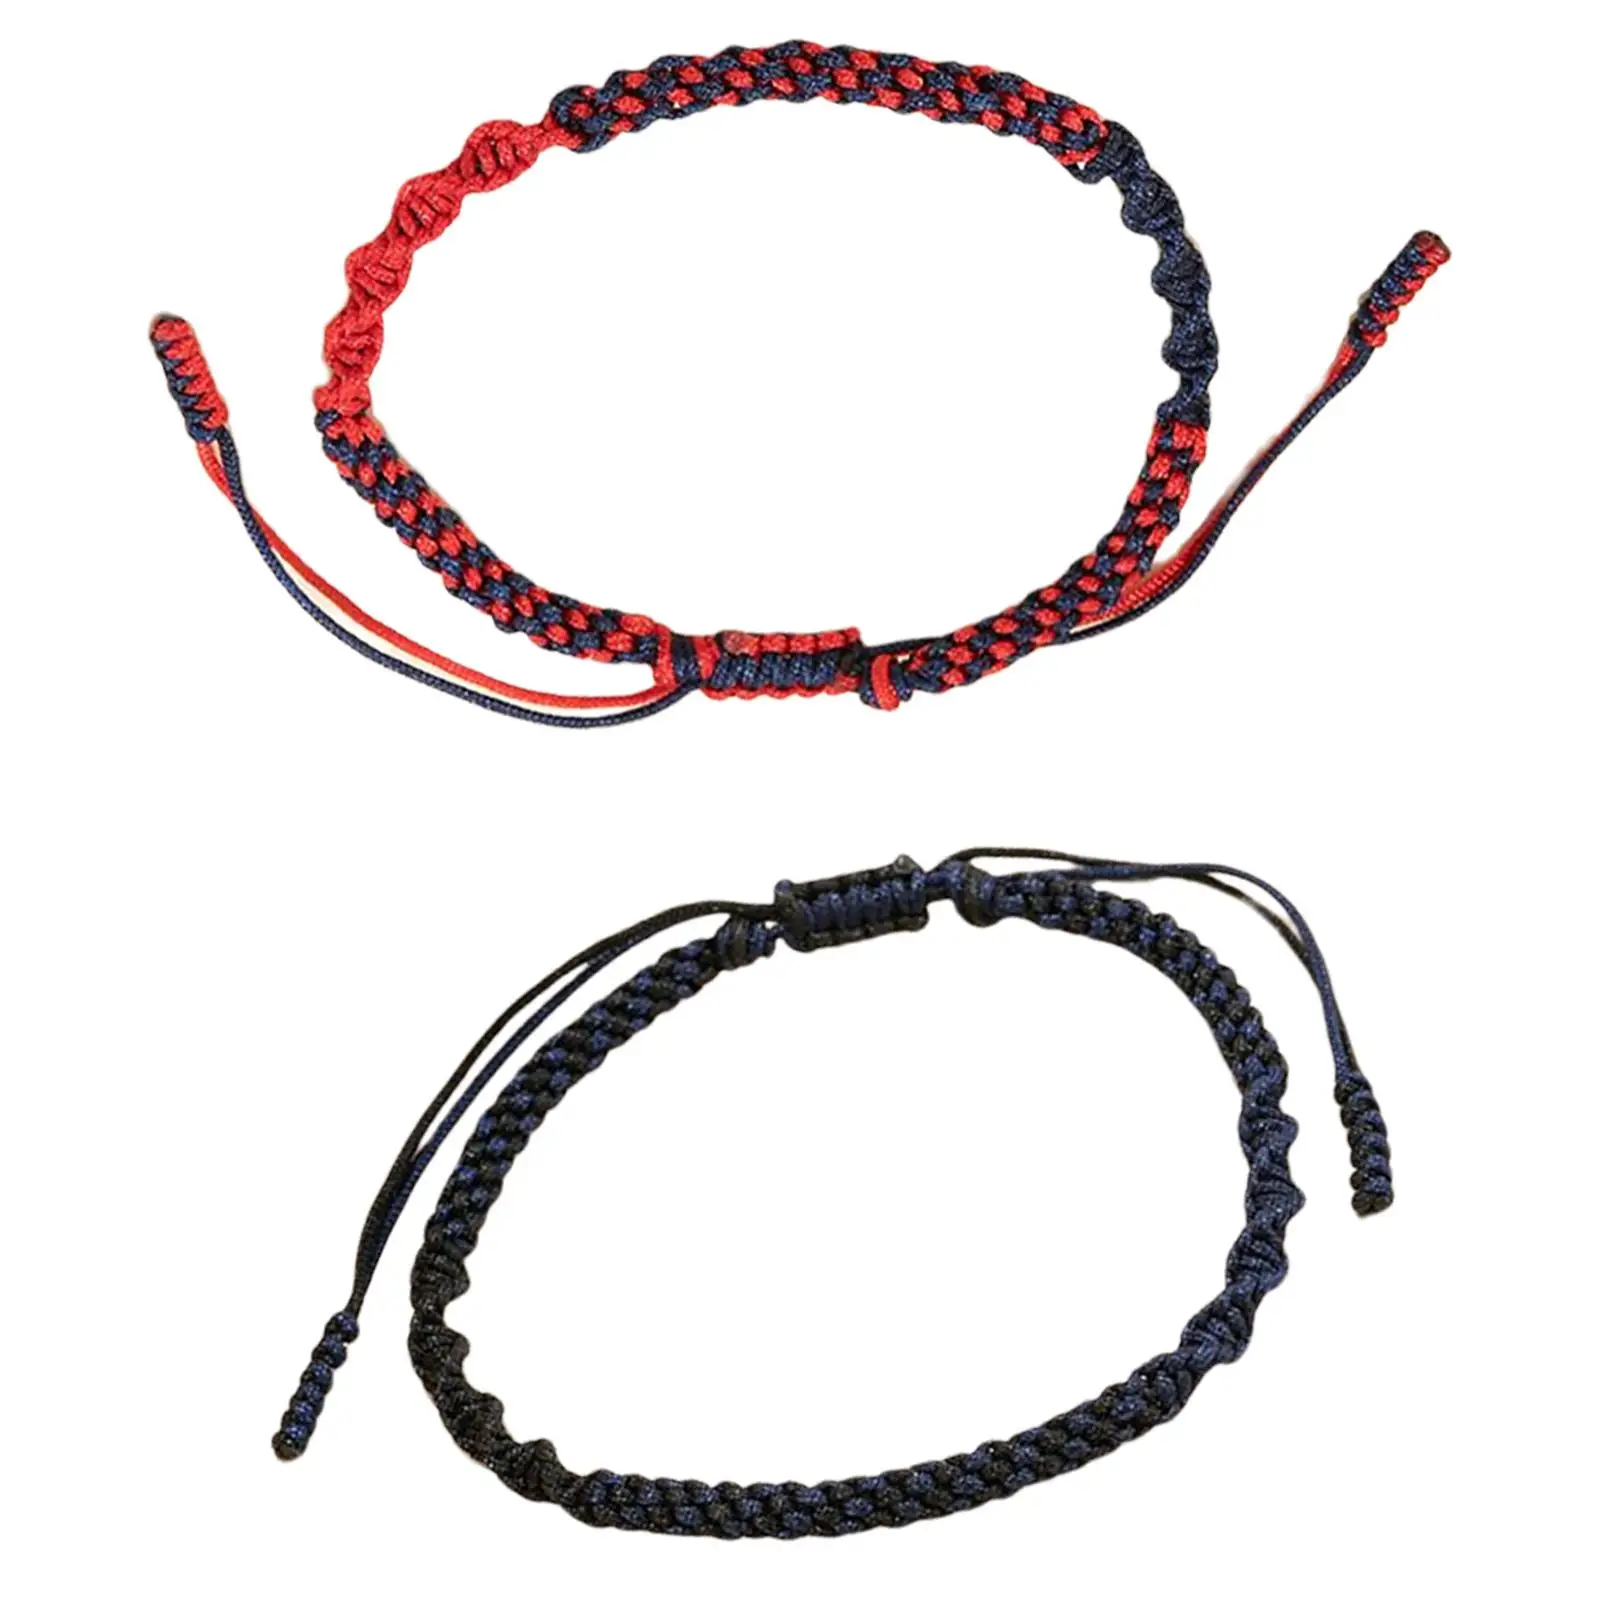 Handmade Rope Bracelet Adjustable 6-8cm Diameter Friendship Gift Unisex